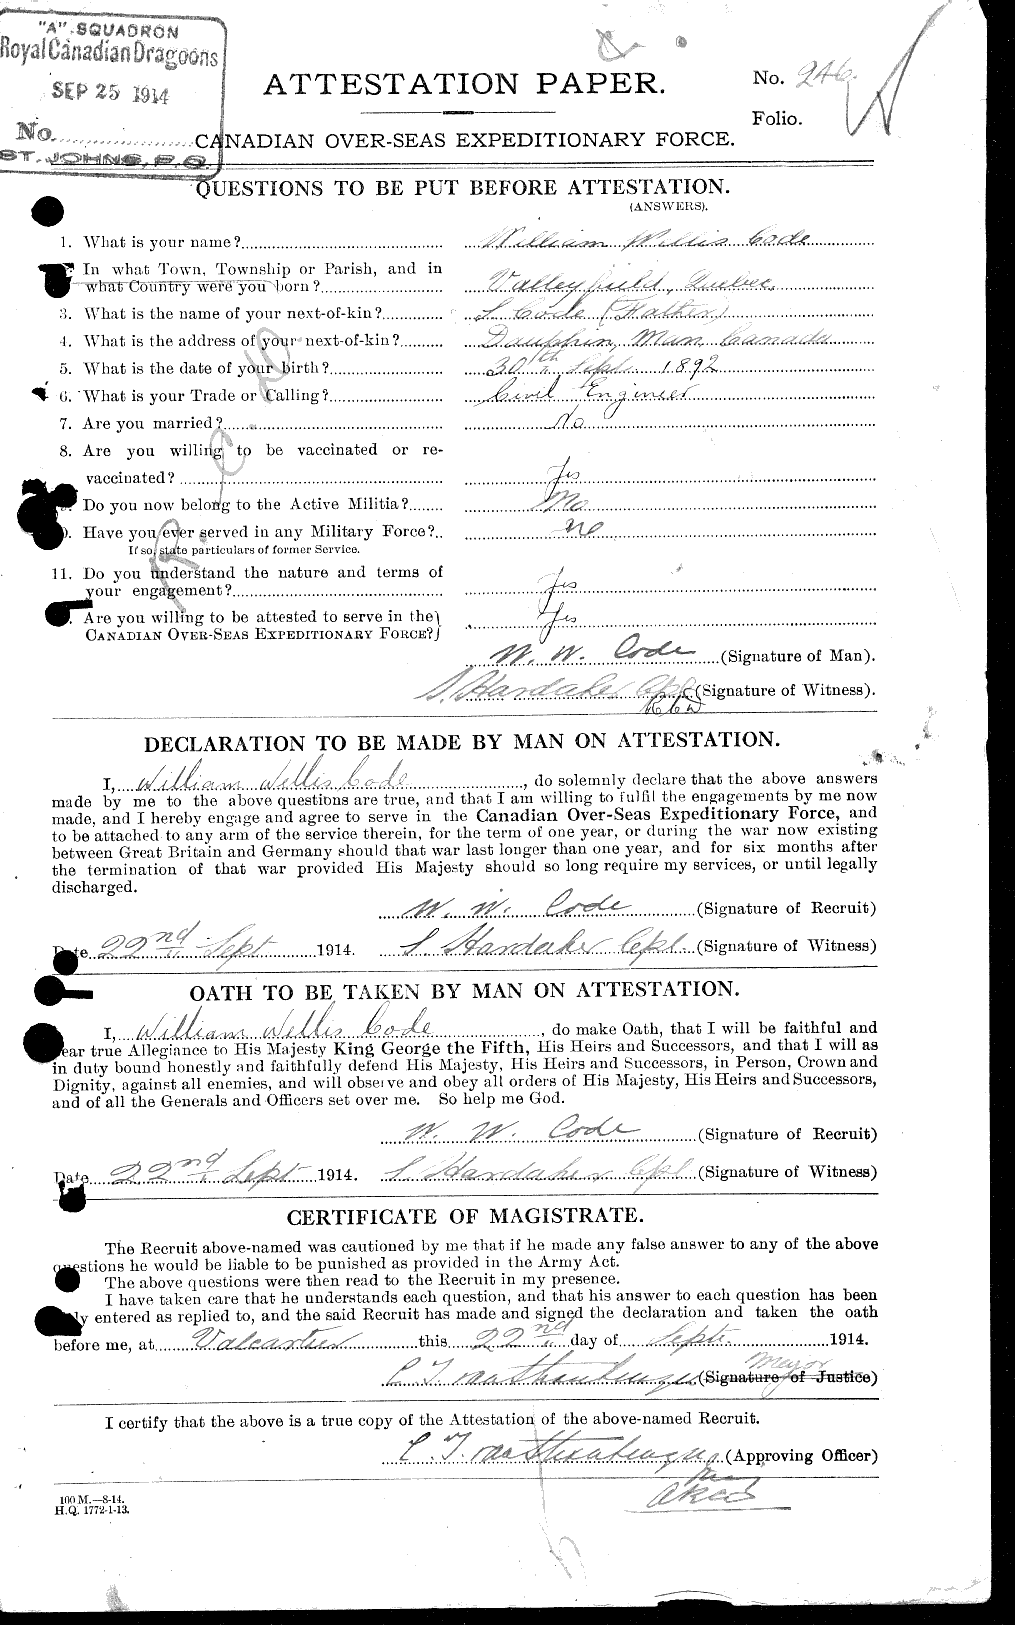 Dossiers du Personnel de la Première Guerre mondiale - CEC 026840a